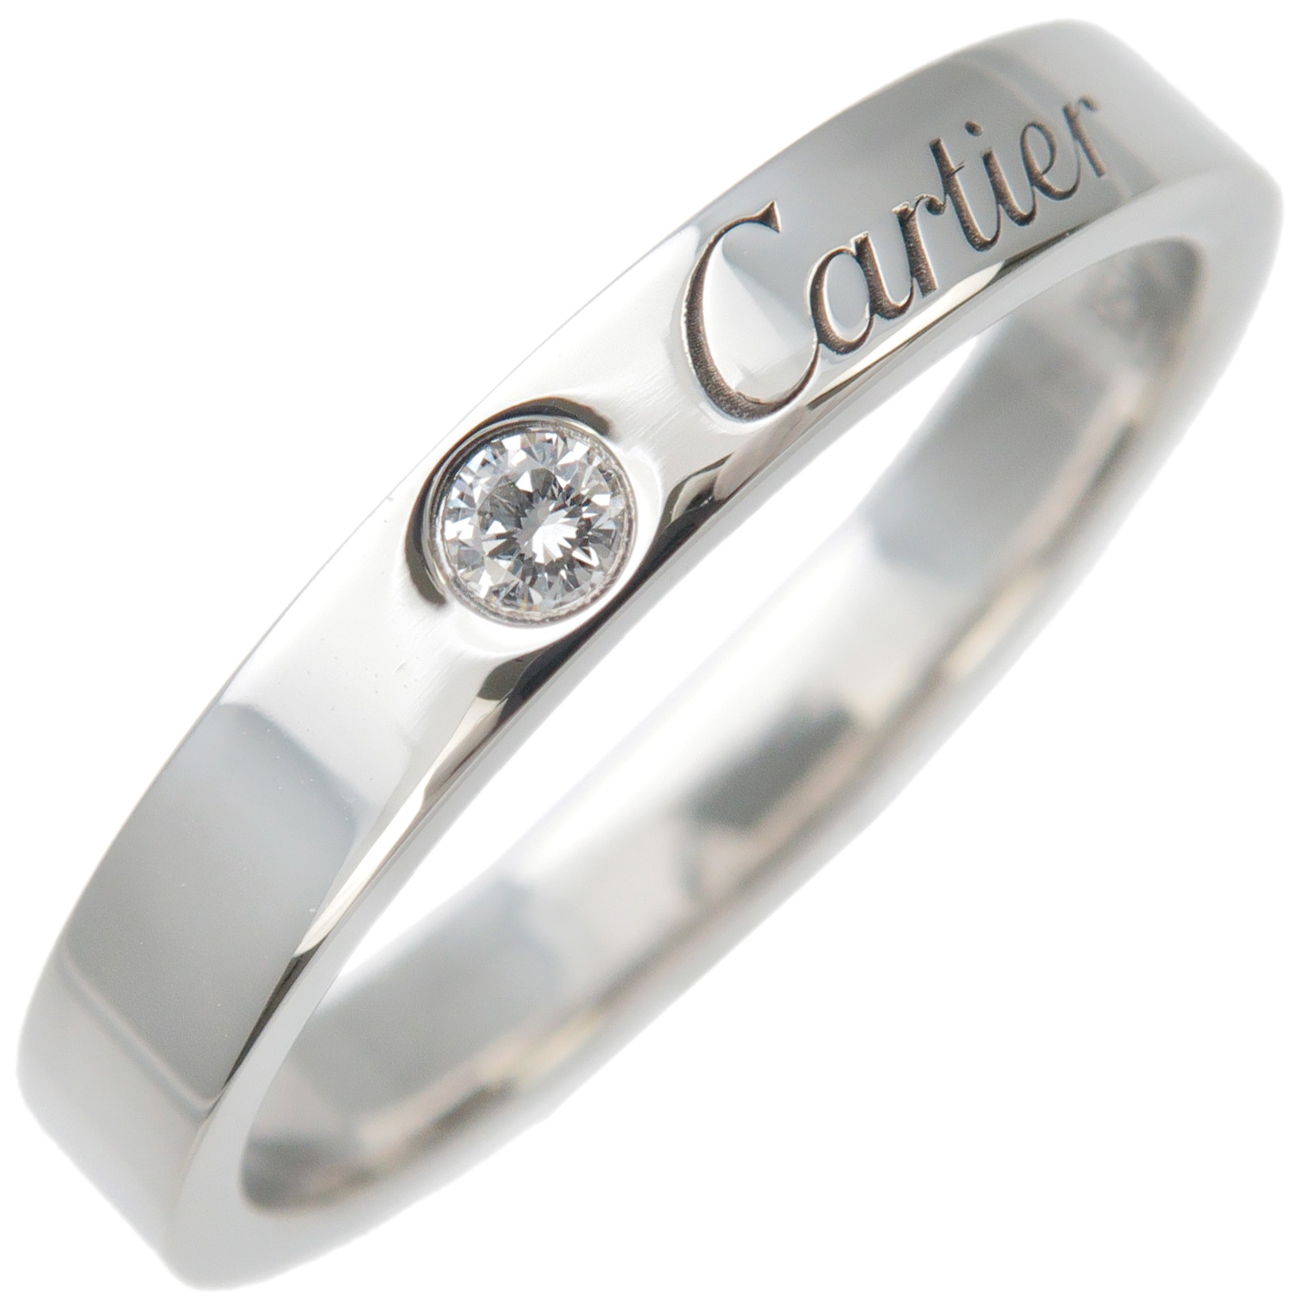 Cartier-Engraved-1P-Diamond-Ring-950-Platinum-#55-US7-7.5-EU55